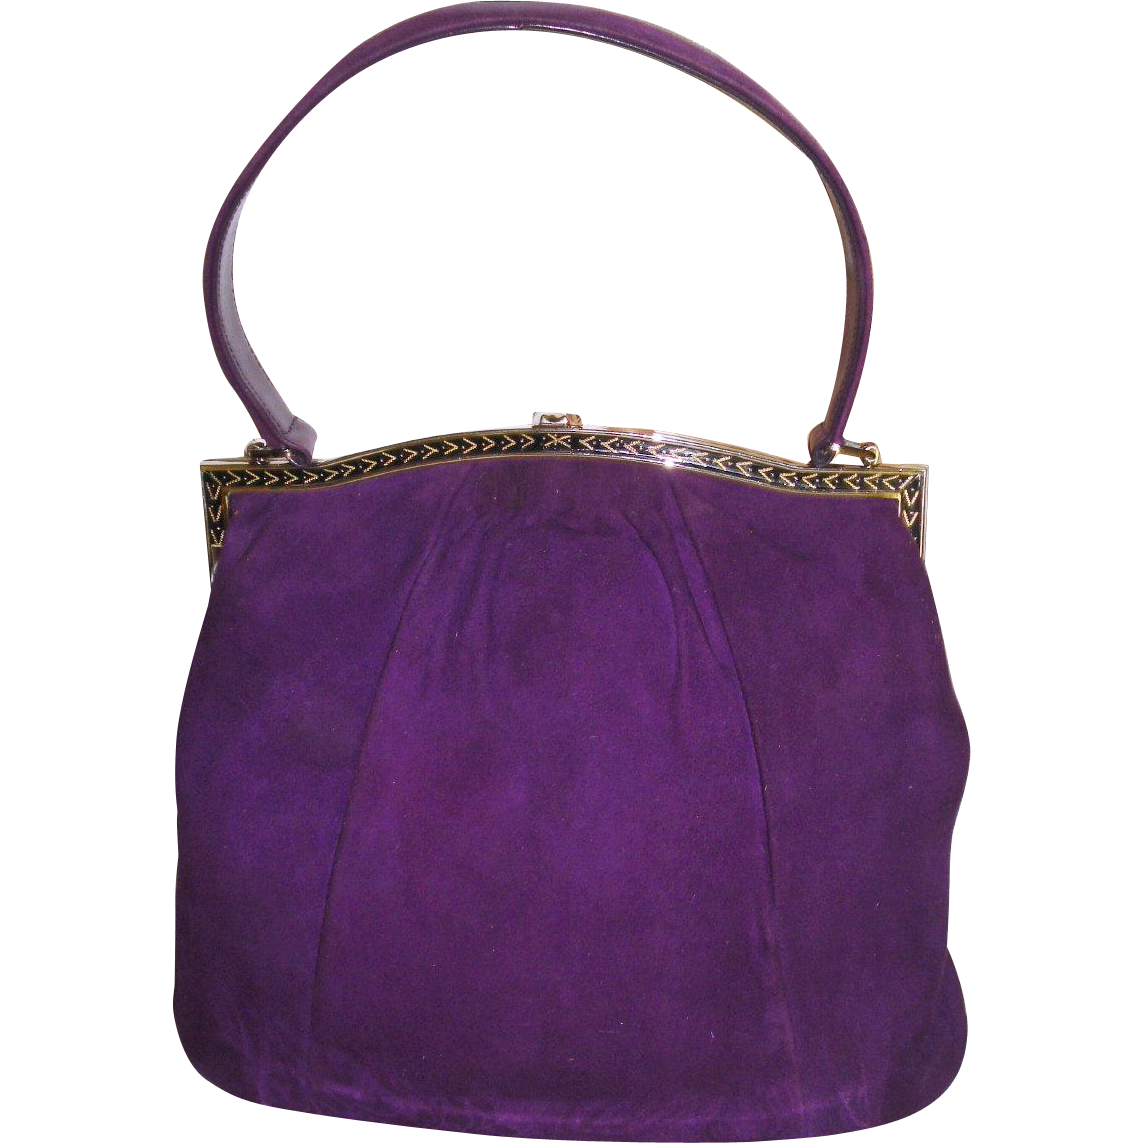 Vintage 1950s Purse Purple Handbag Mad Men Rockabilly - Handbag - HD Wallpaper 